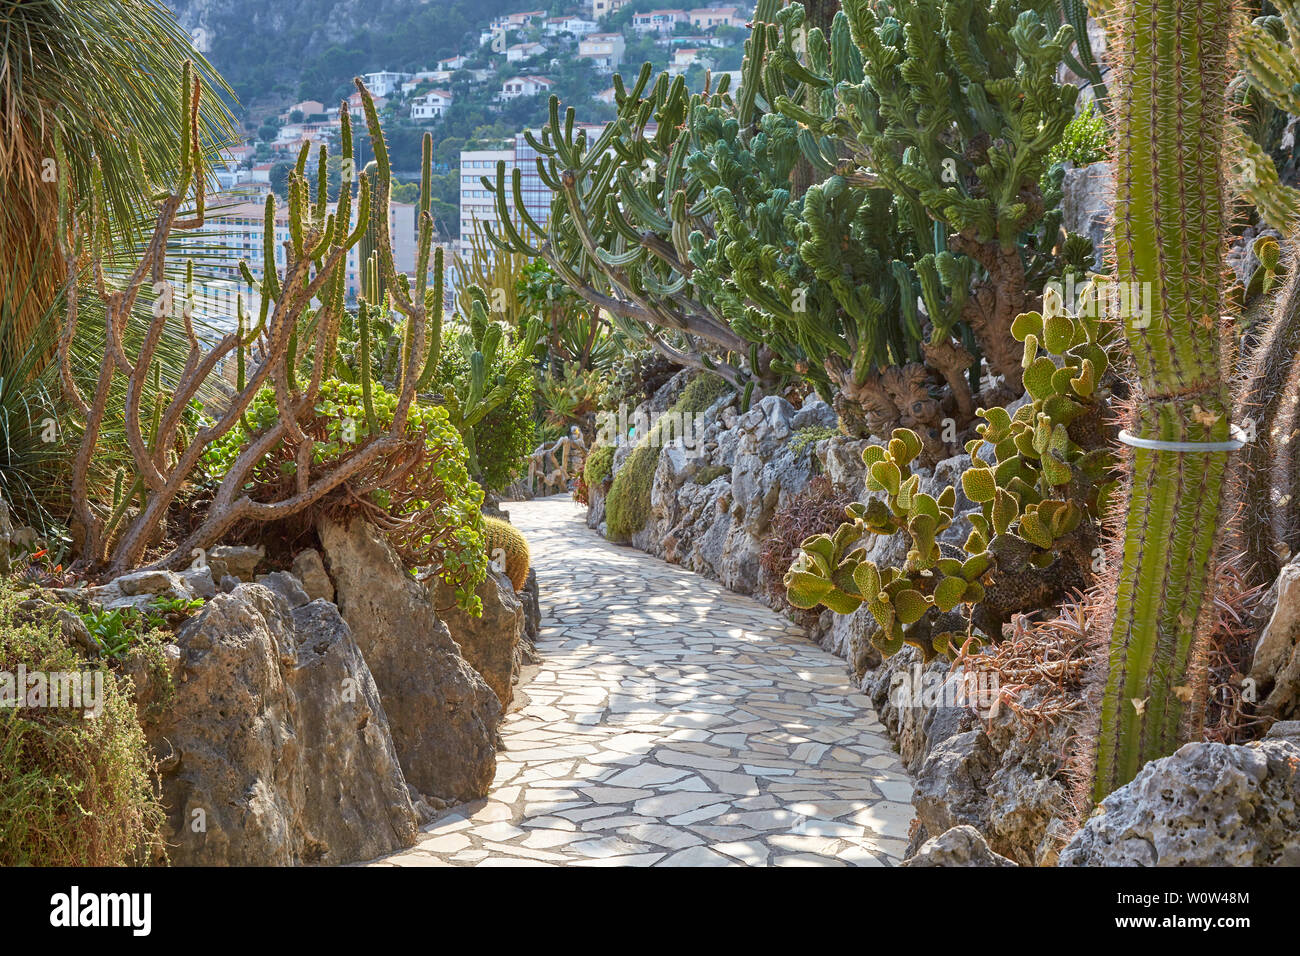 MONTE CARLO, MONACO - le 20 août 2016 : Le chemin de jardin exotique avec de rares plantes succulentes dans un jour d'été ensoleillé à Monte Carlo, Monaco. Banque D'Images